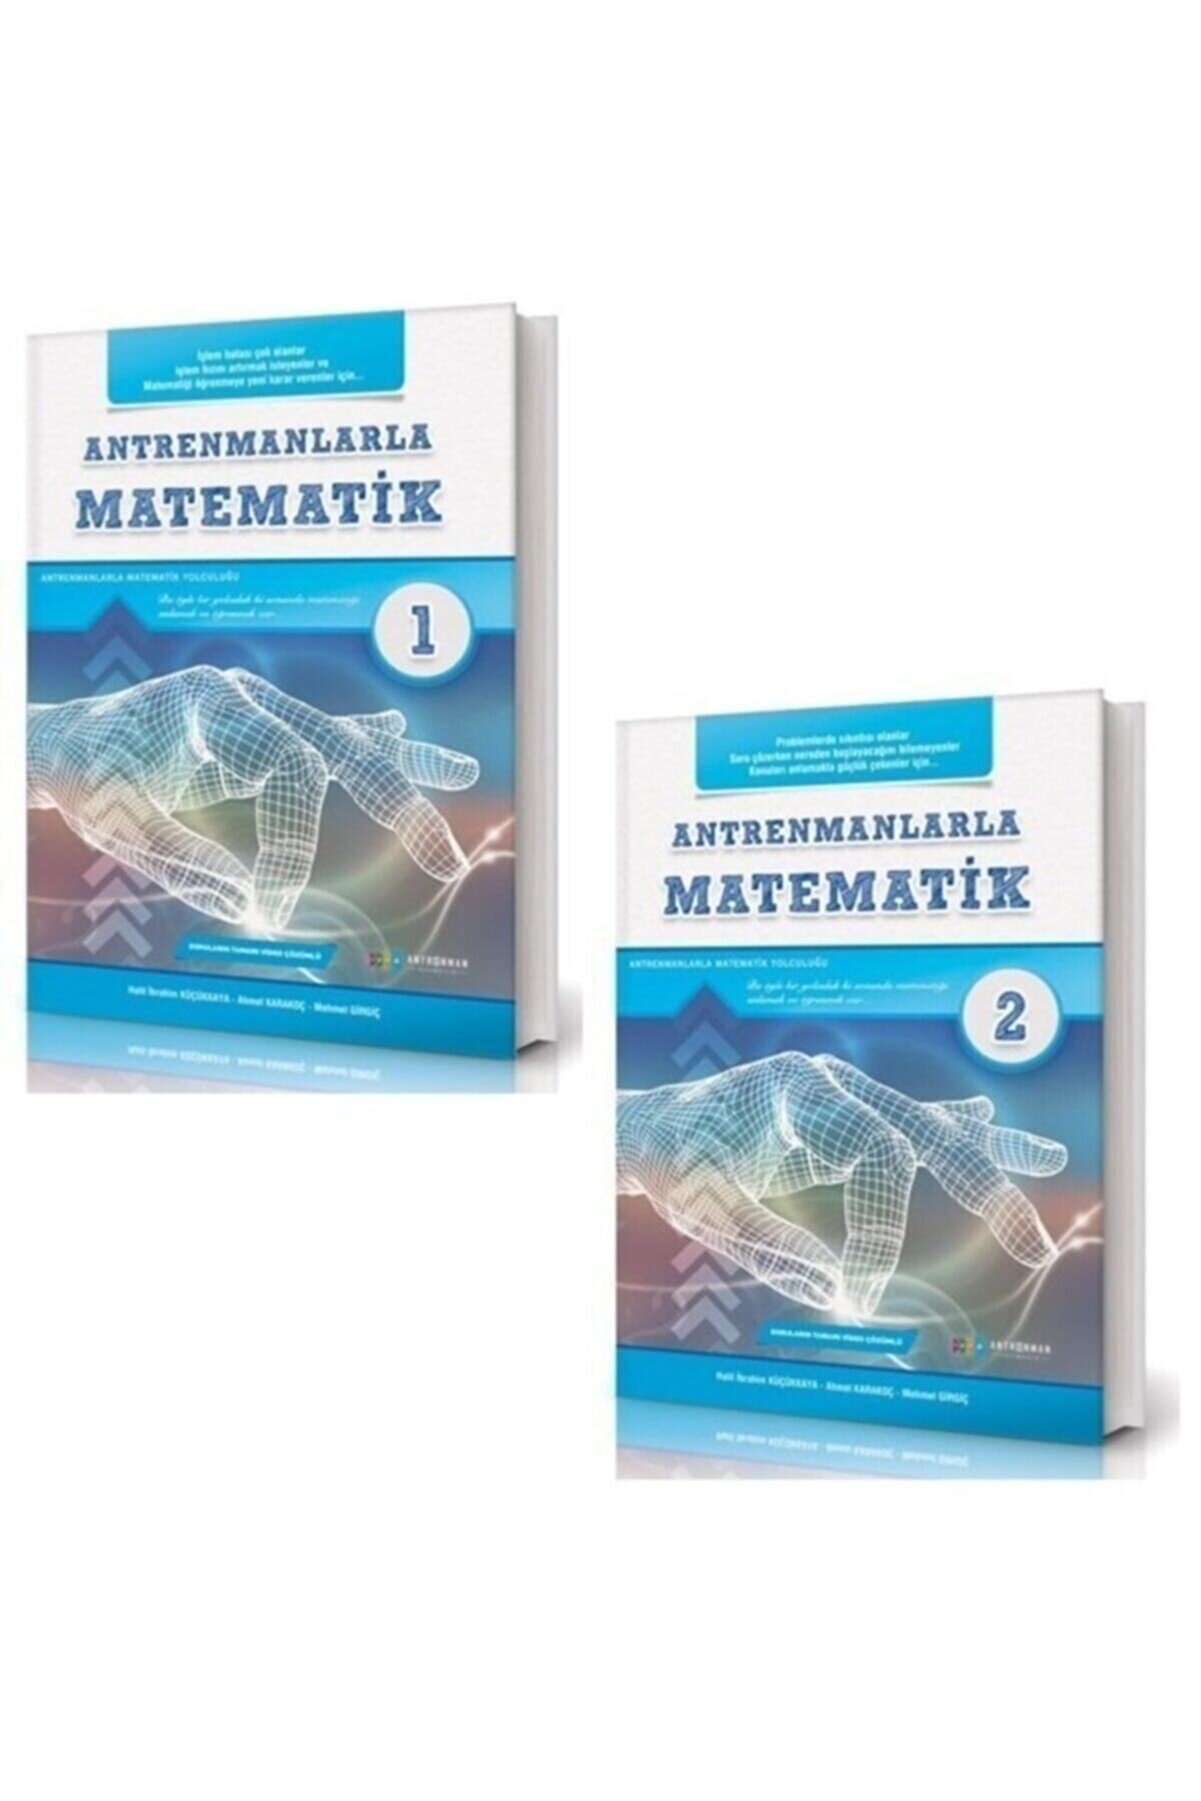 Antrenman Yayınları Antrenmanlarla Matematik 1-2 Kitap Seti